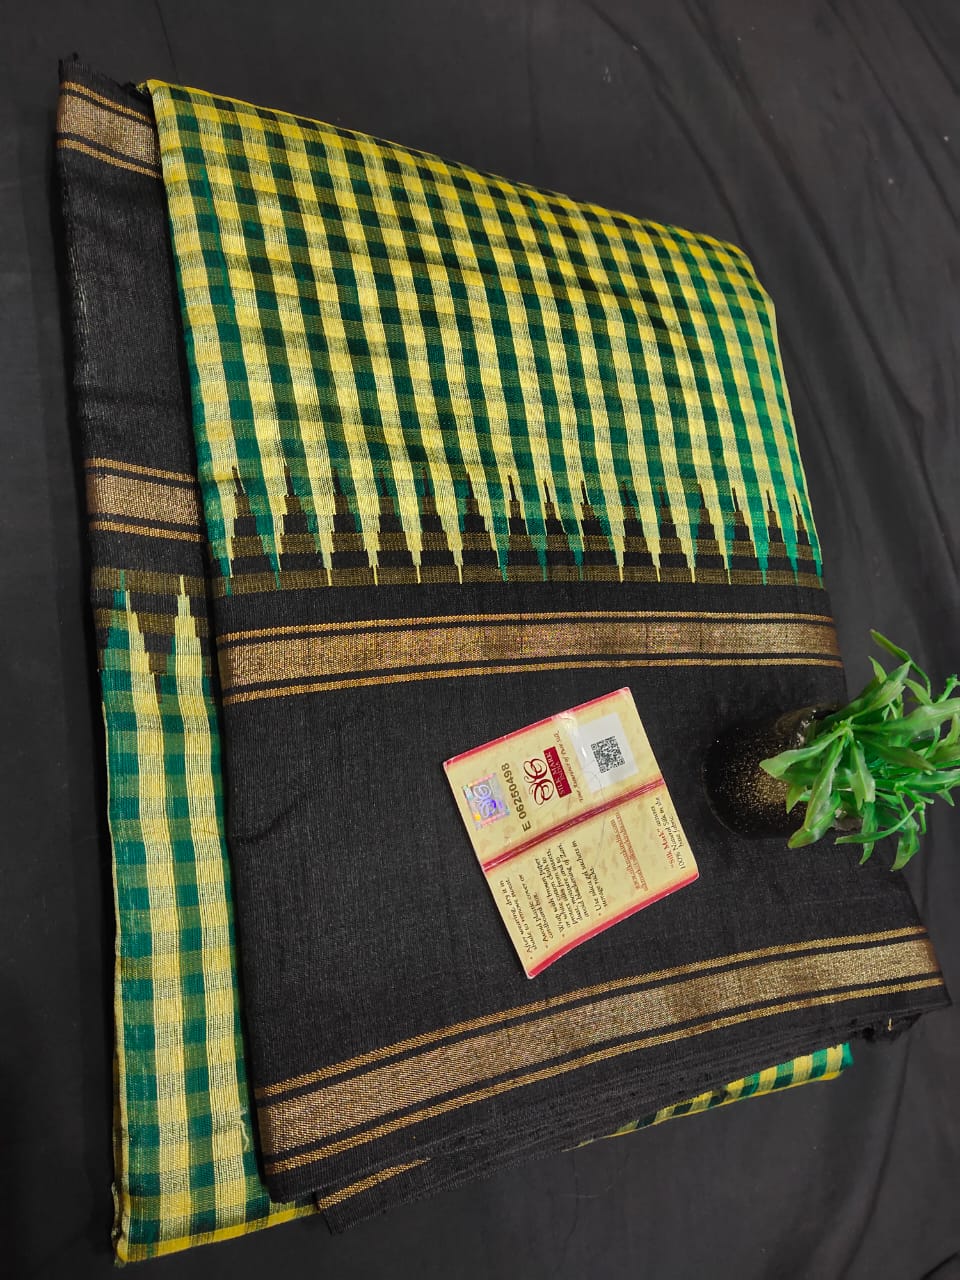 Pure Raw Silk Saree with temple border and mini checks